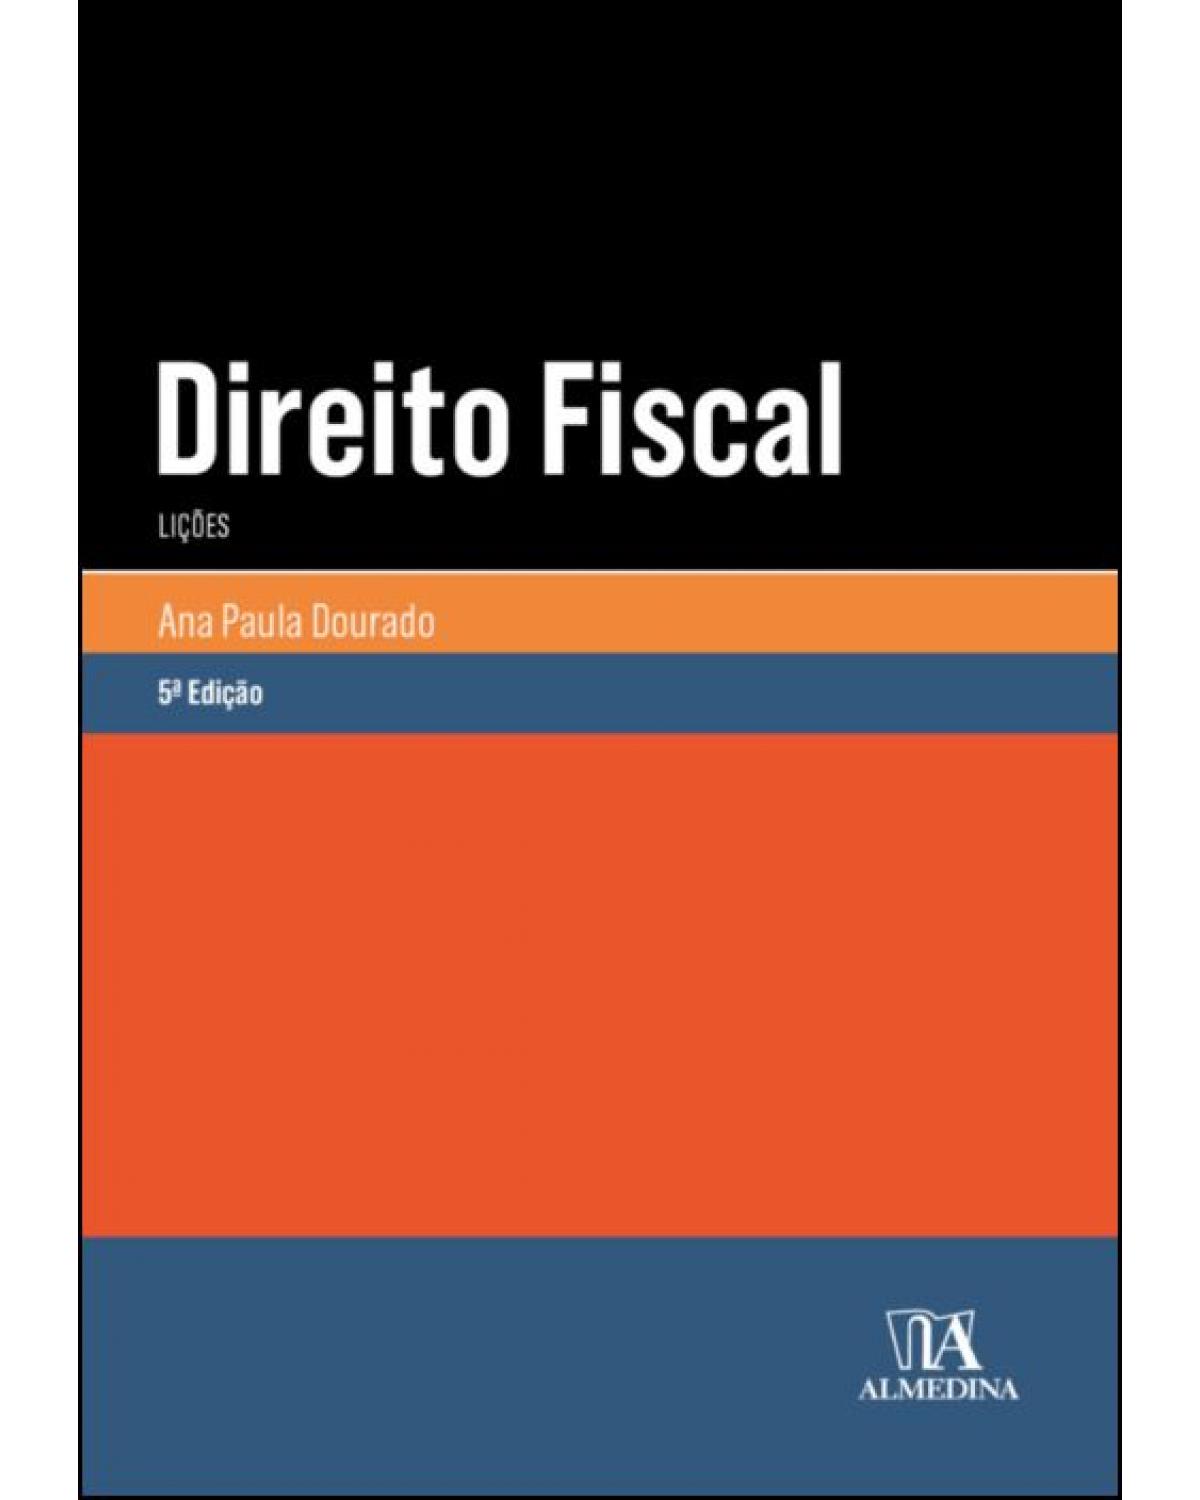 Direito fiscal: Lições - 5ª Edição | 2021